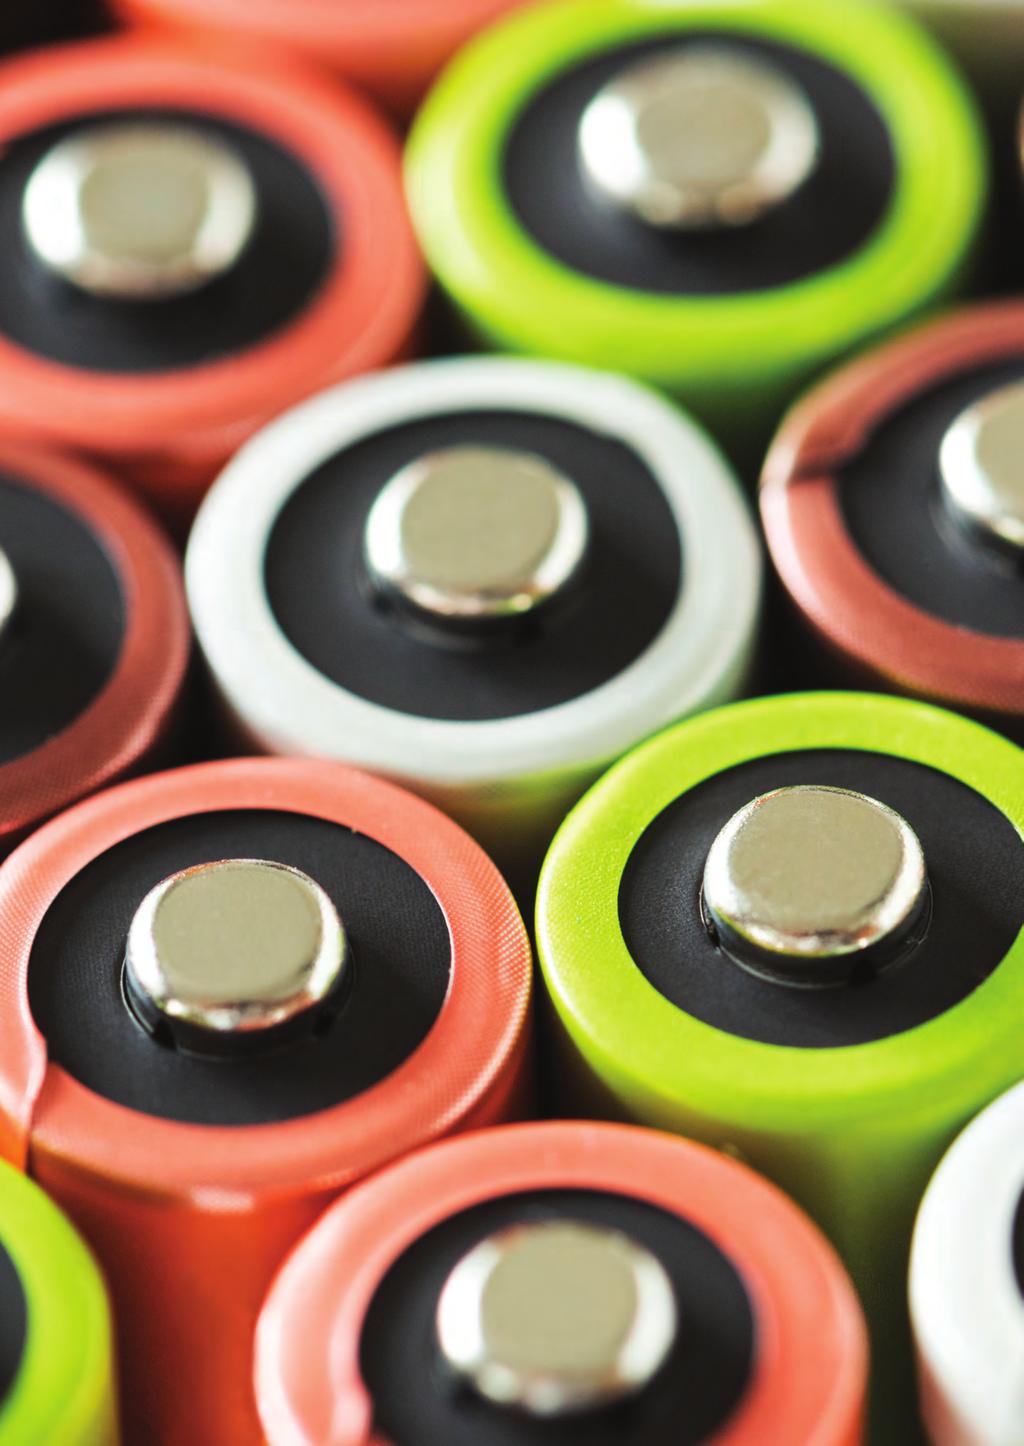 Battery Technology Advancing